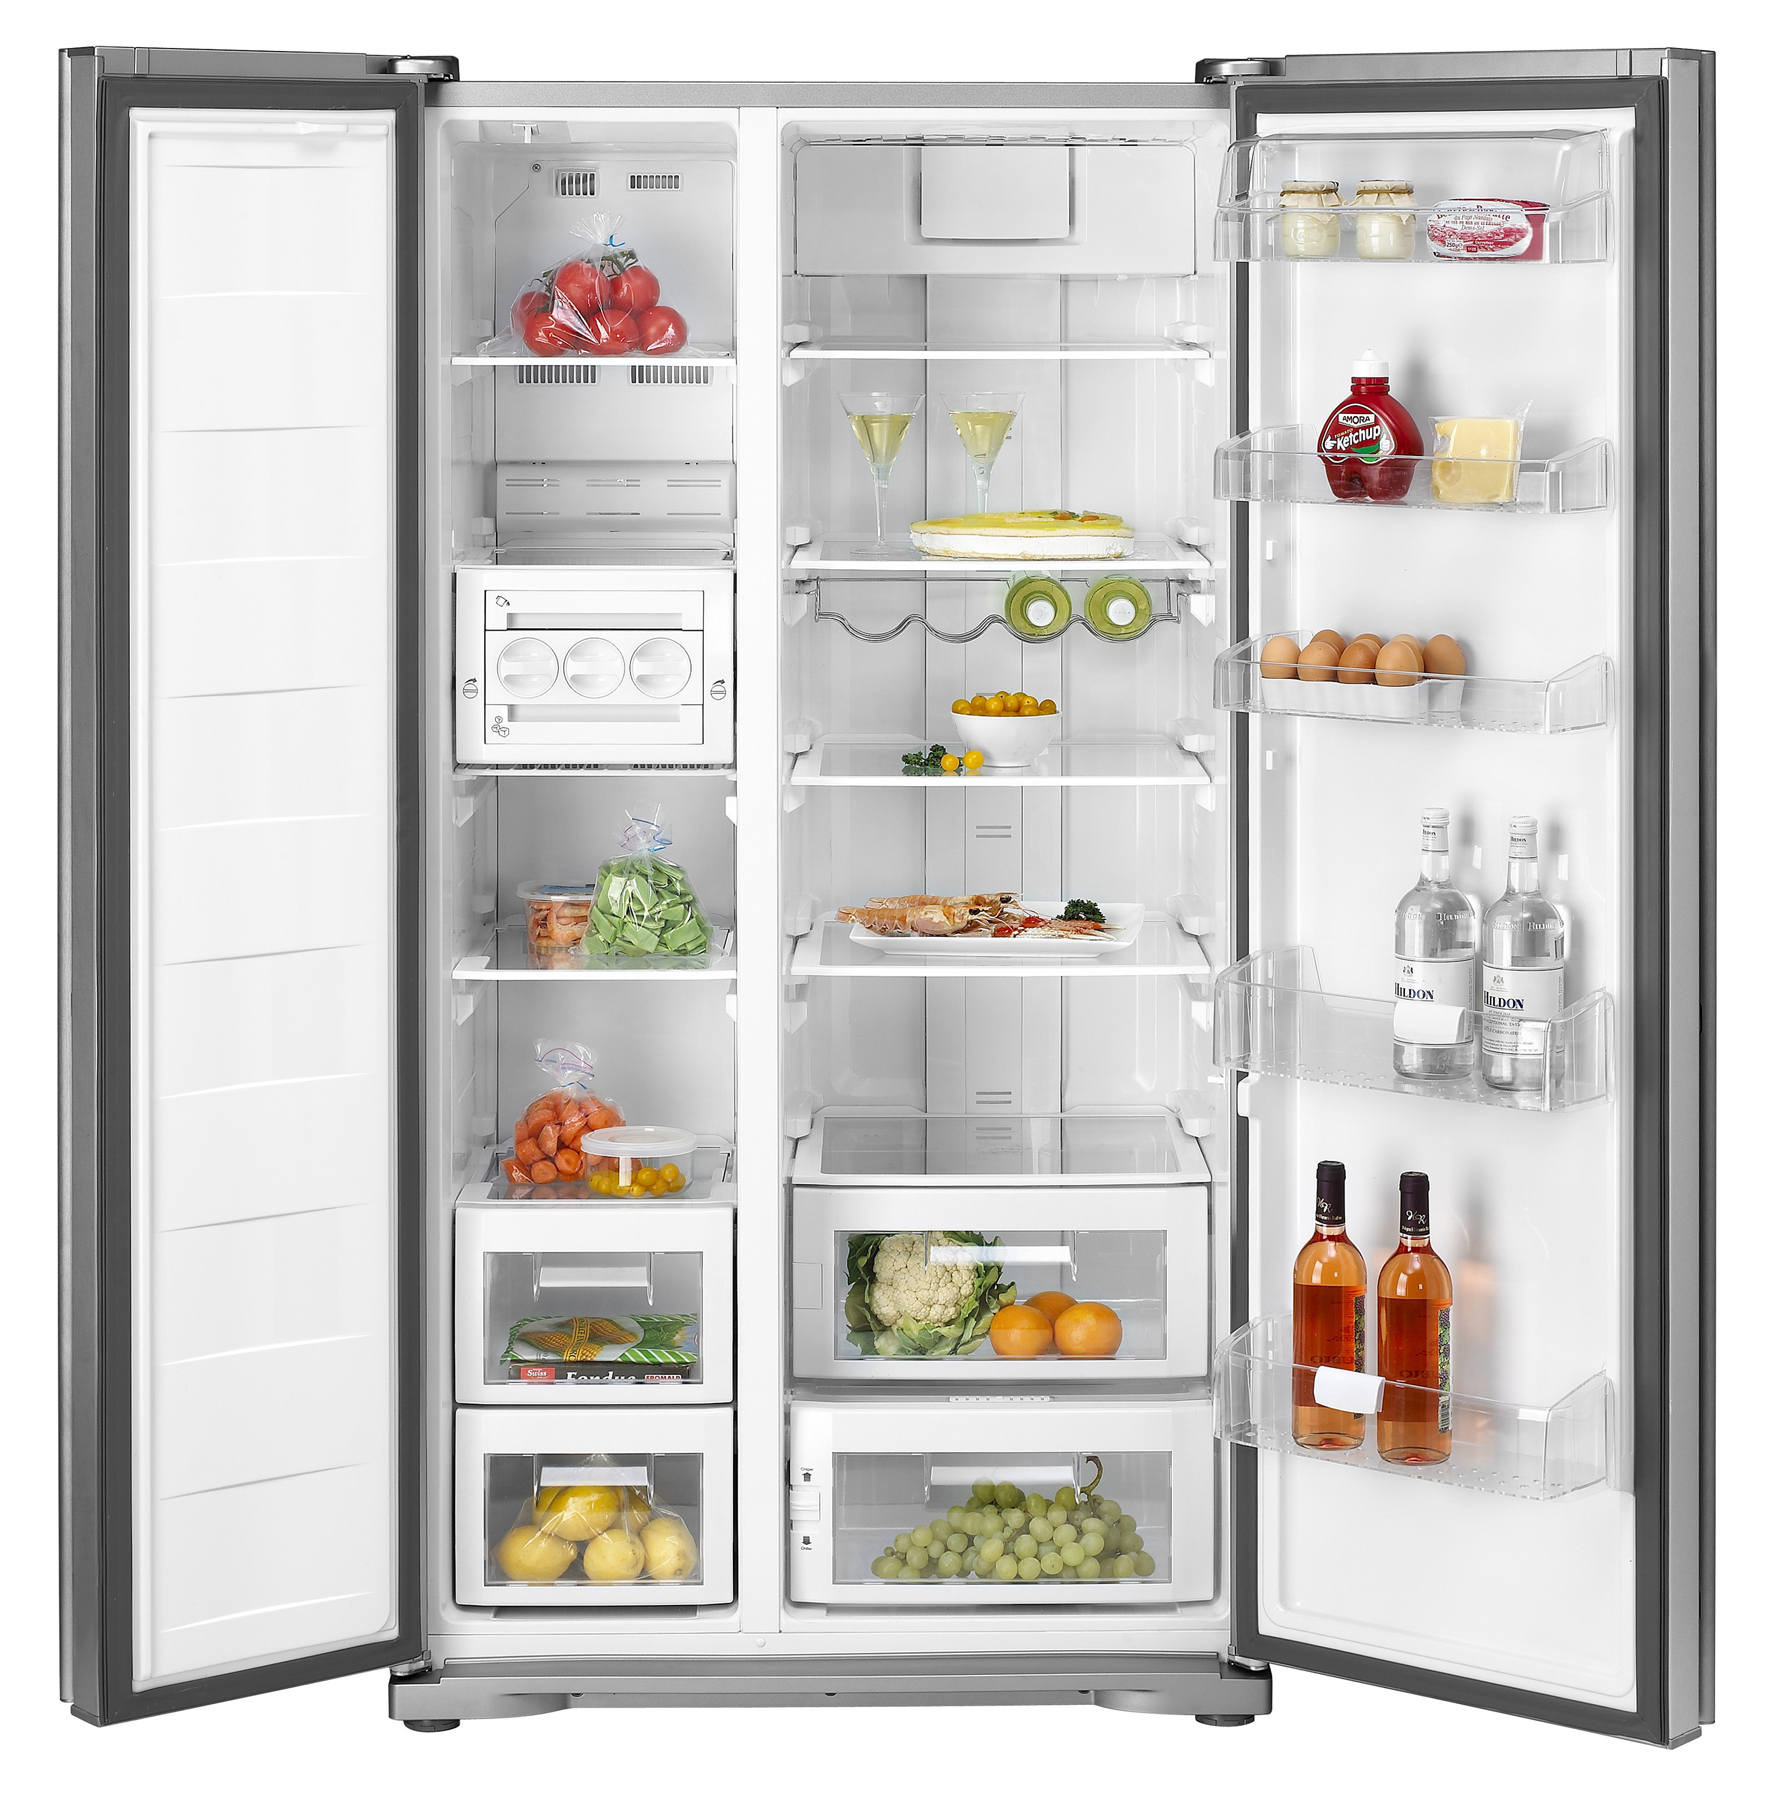 Tại sao nên mua mới tủ lạnh dịp cận Tết?